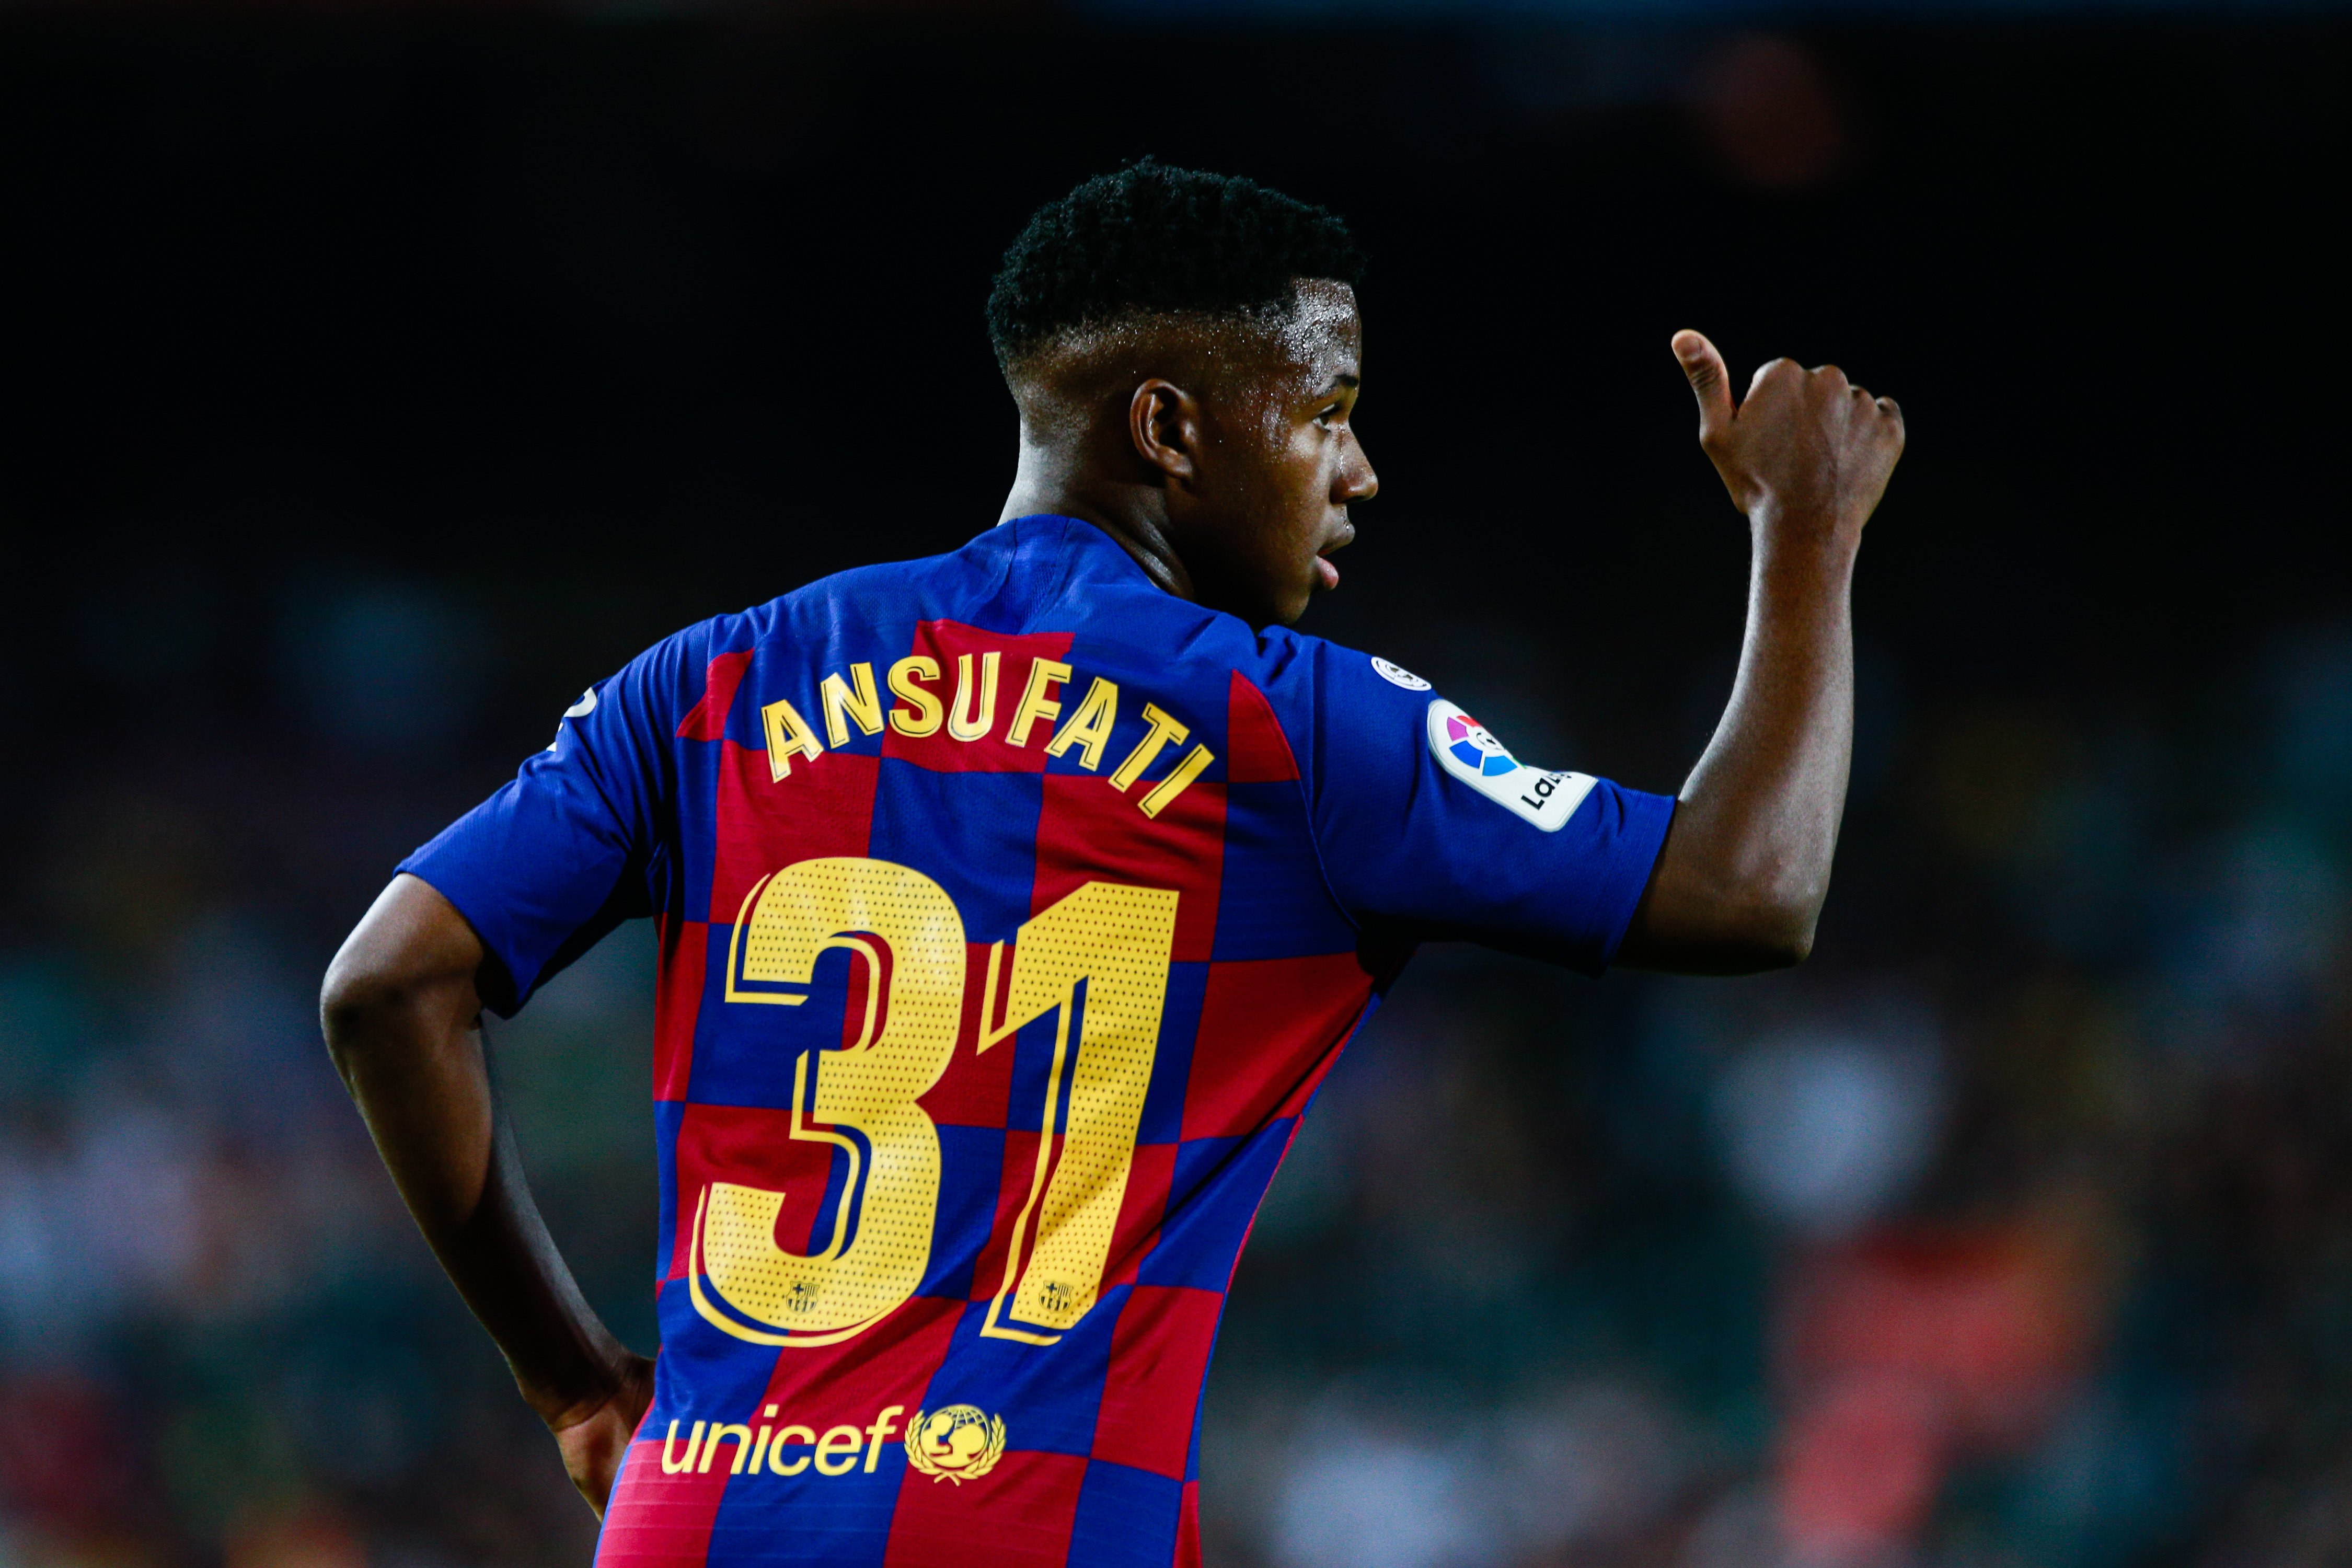 El Barça hauria rebutjat 100 milions d'euros per Ansu Fati